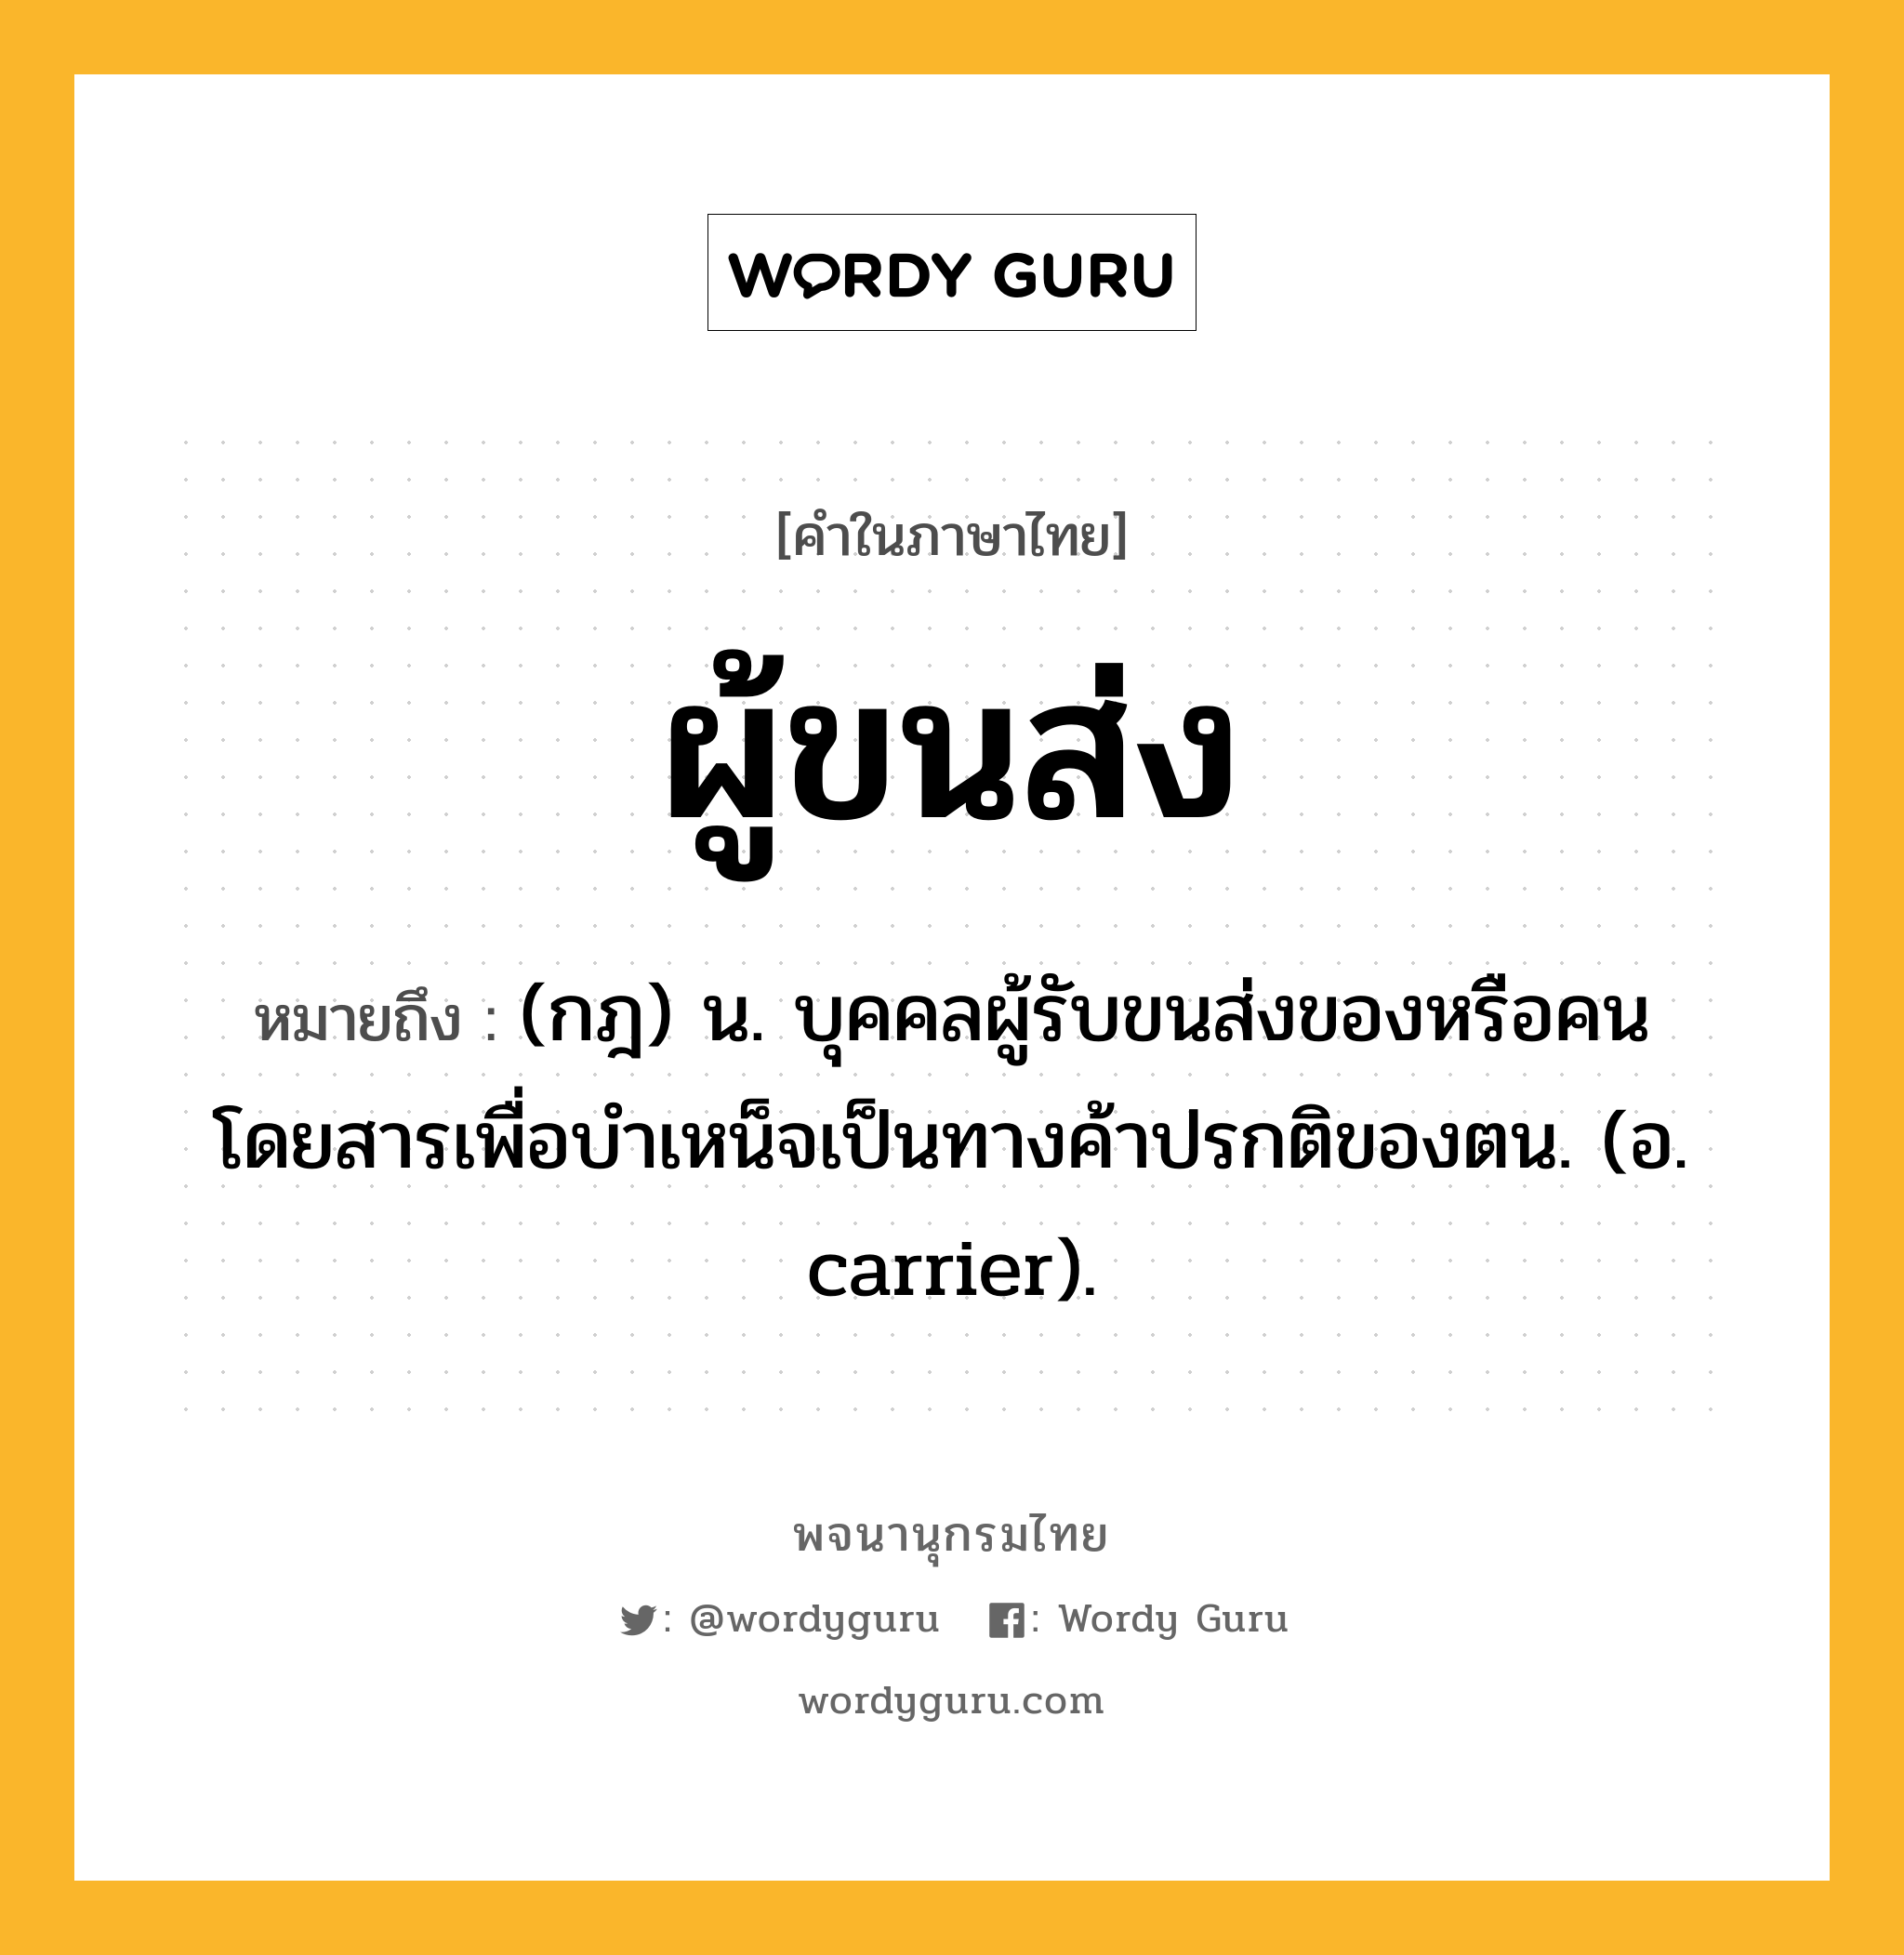 ผู้ขนส่ง ความหมาย หมายถึงอะไร?, คำในภาษาไทย ผู้ขนส่ง หมายถึง (กฎ) น. บุคคลผู้รับขนส่งของหรือคนโดยสารเพื่อบำเหน็จเป็นทางค้าปรกติของตน. (อ. carrier).